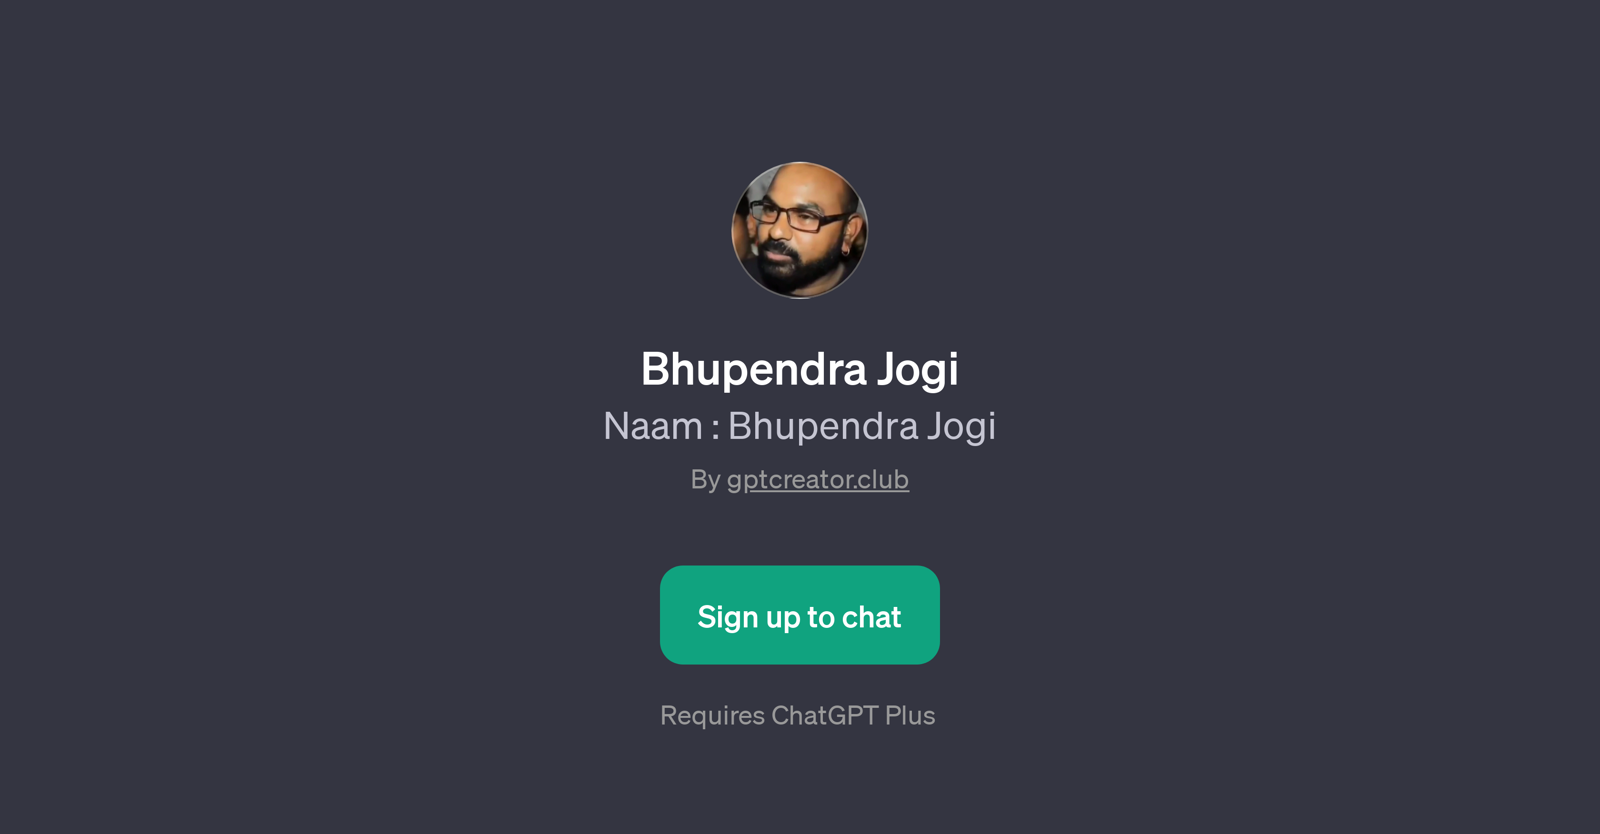 Bhupendra Jogi website